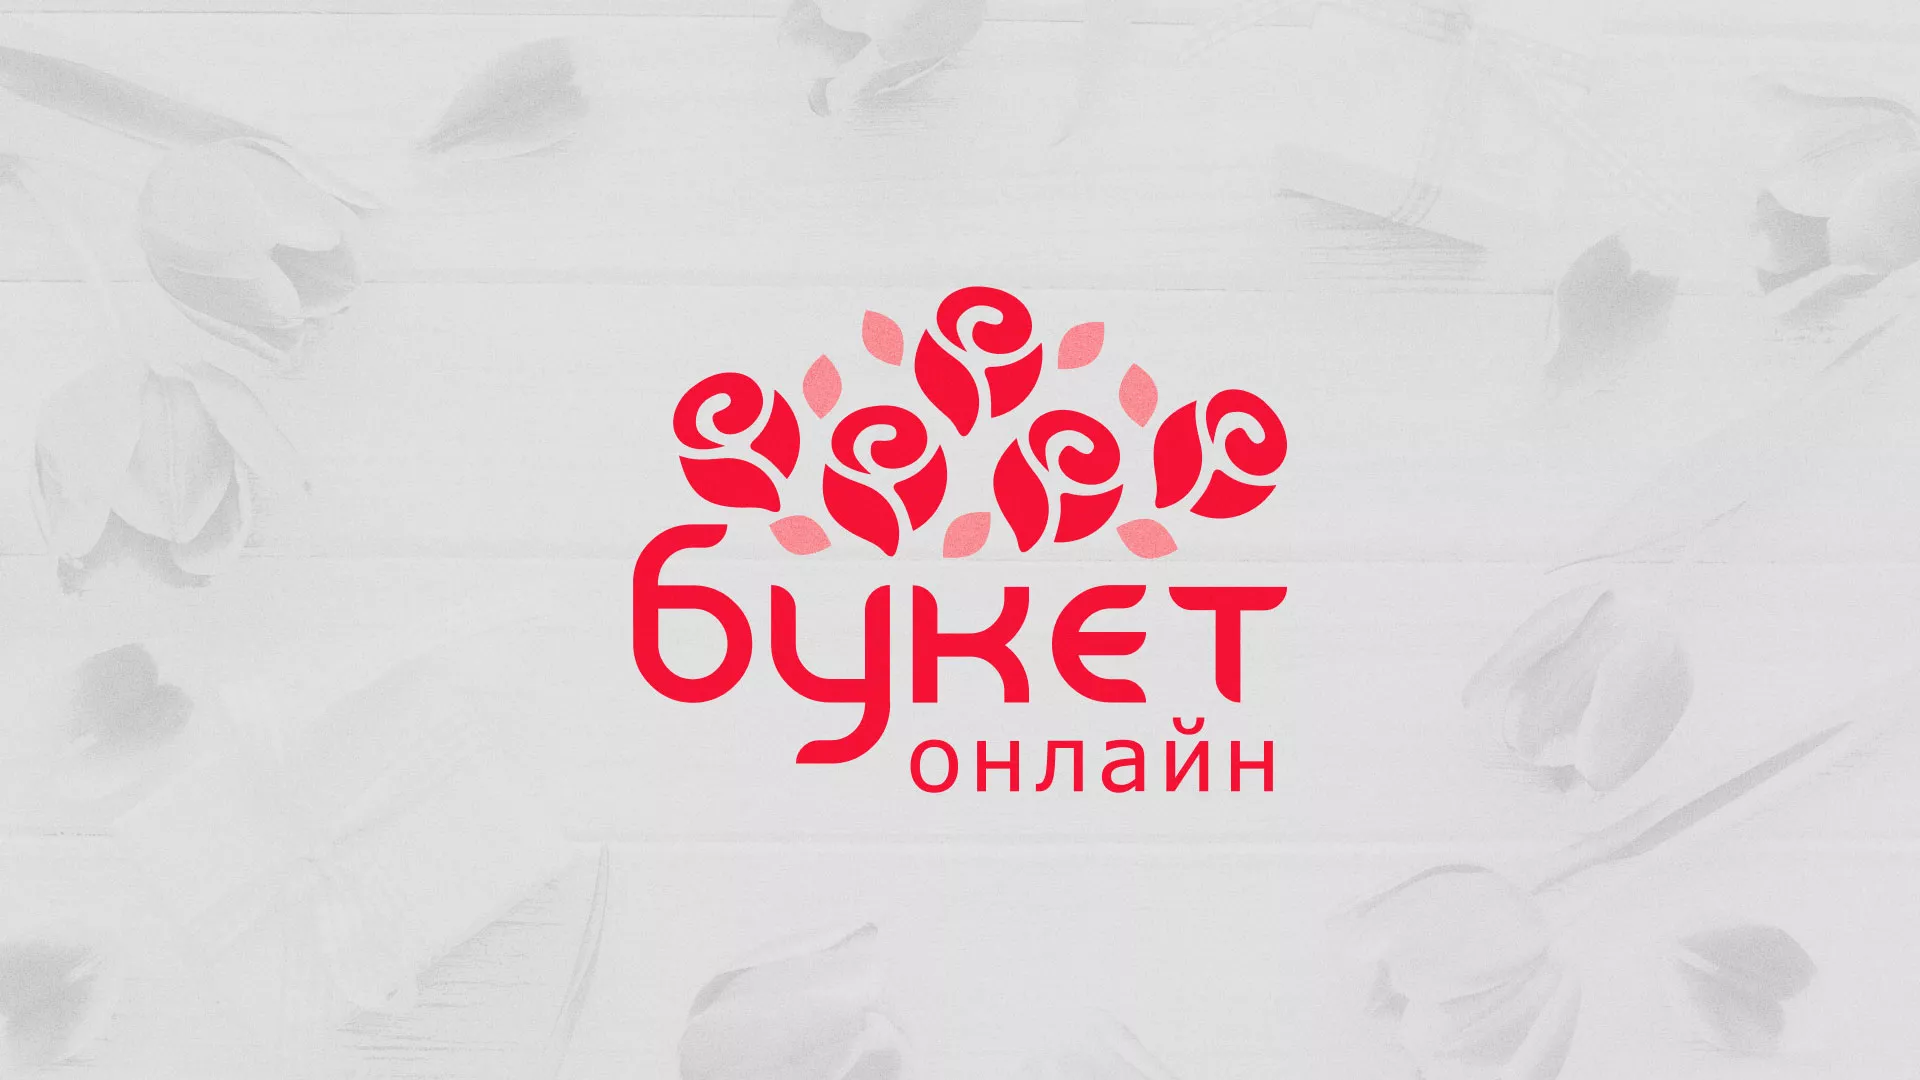 Создание интернет-магазина «Букет-онлайн» по цветам в Лихославле